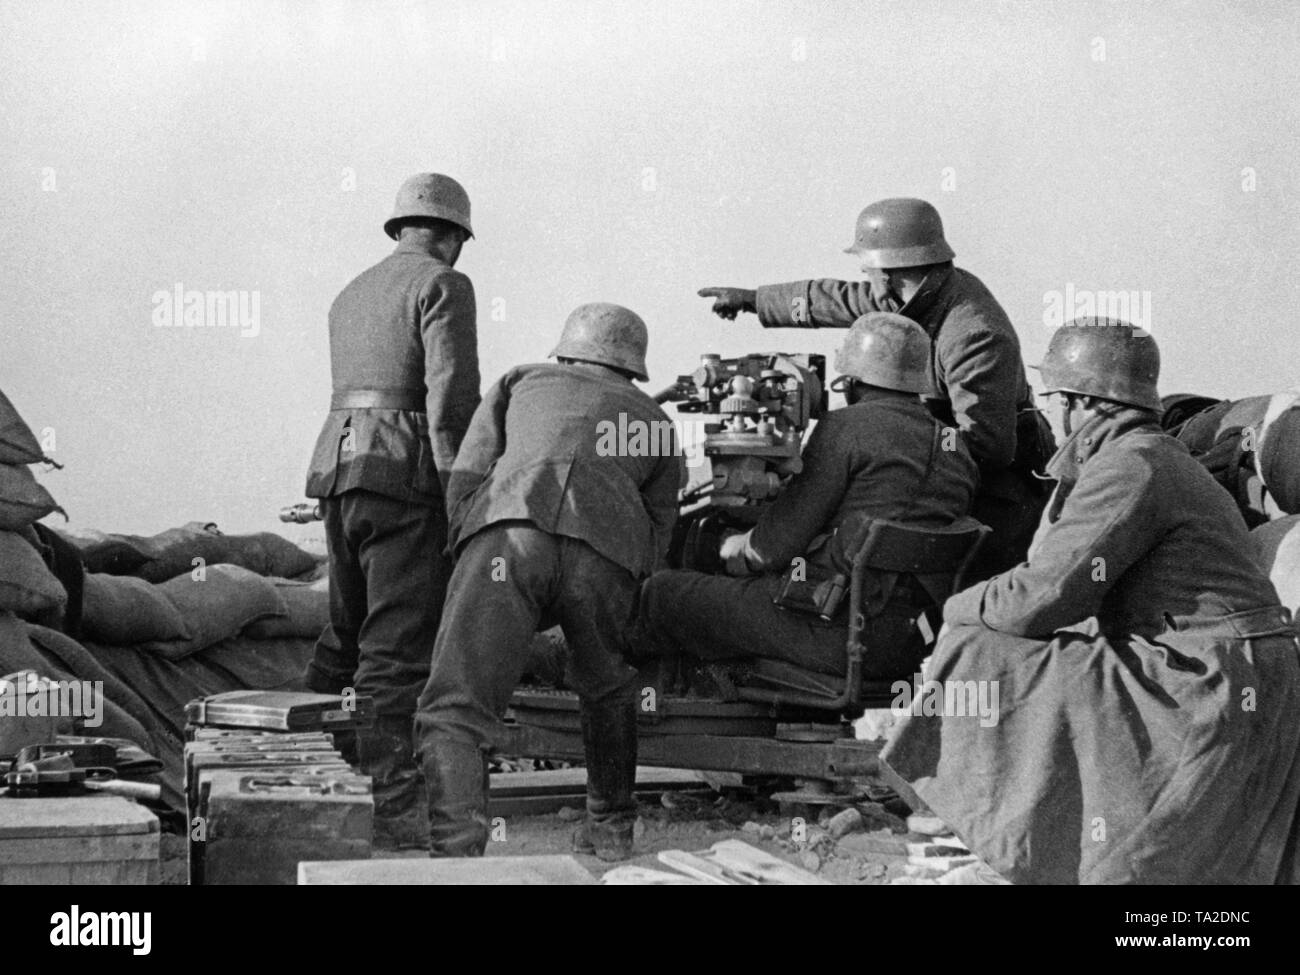 Undatiertes Foto von einer anti-Flugzeuge der Legion Condor während der Bereitstellung im Spanischen Bürgerkrieg. Fünf Männer nehmen Ziel am Boden Ziele mit einer 2-cm-FLAK 39 in einem sandsack Stellung. Links in der Front gibt es Kisten Munition. Die Soldaten tragen M 35 Stahlhelme. Stockfoto